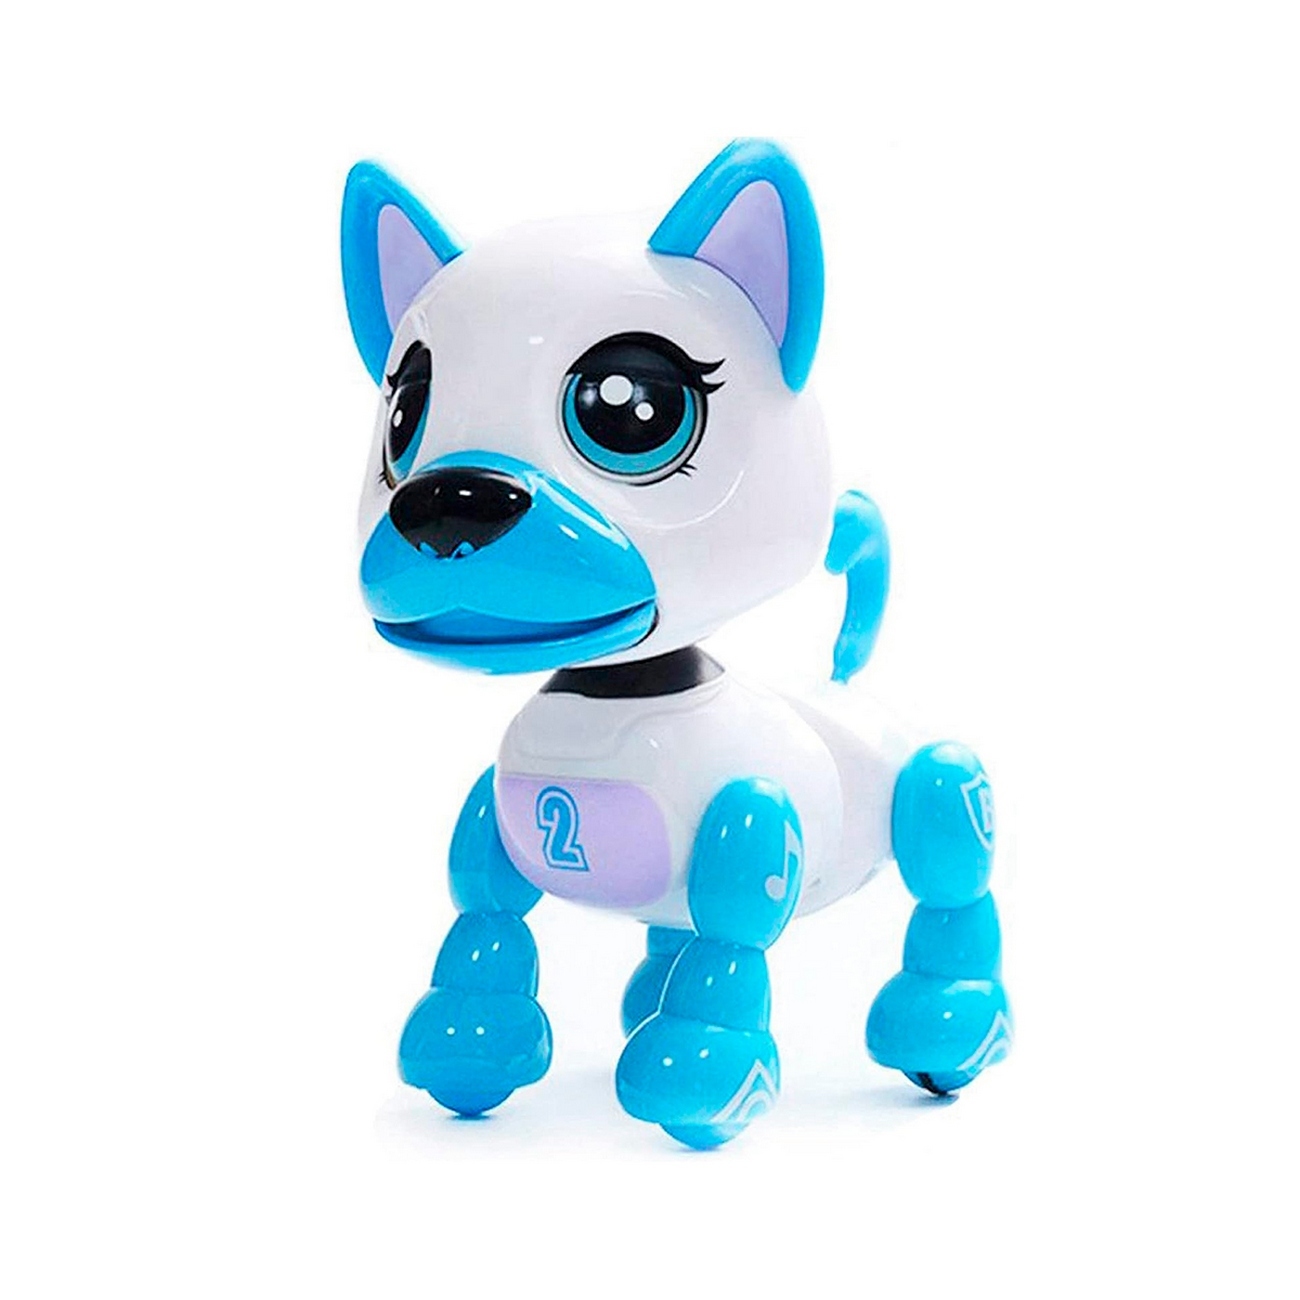 Perro Robot Mascota Niños Interactivo Recargable Juguete